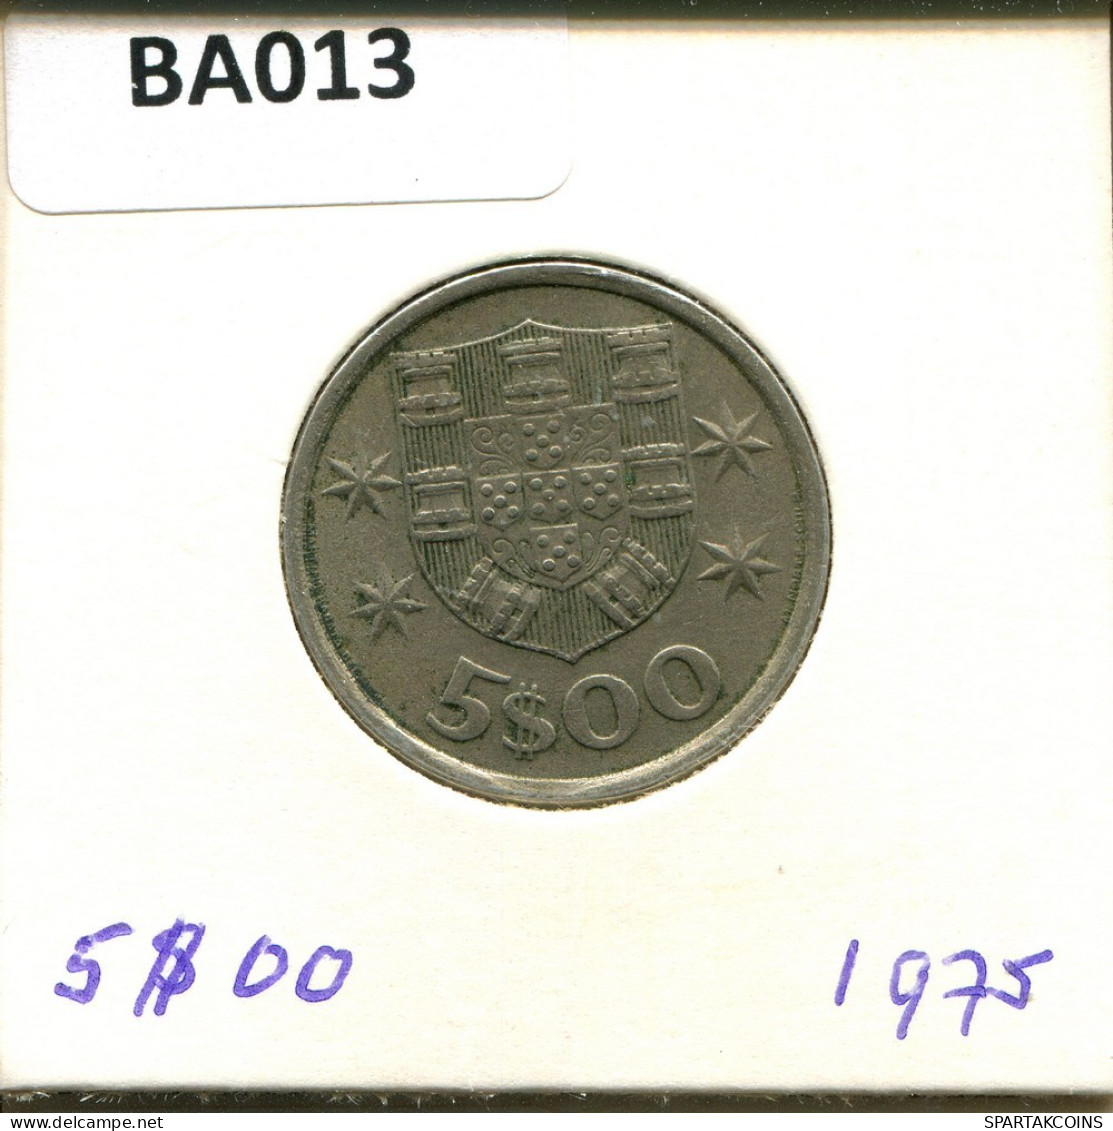 5 $ 00 ESCUDOS 1975 PORTUGAL Moneda #BA013.E.A - Portogallo